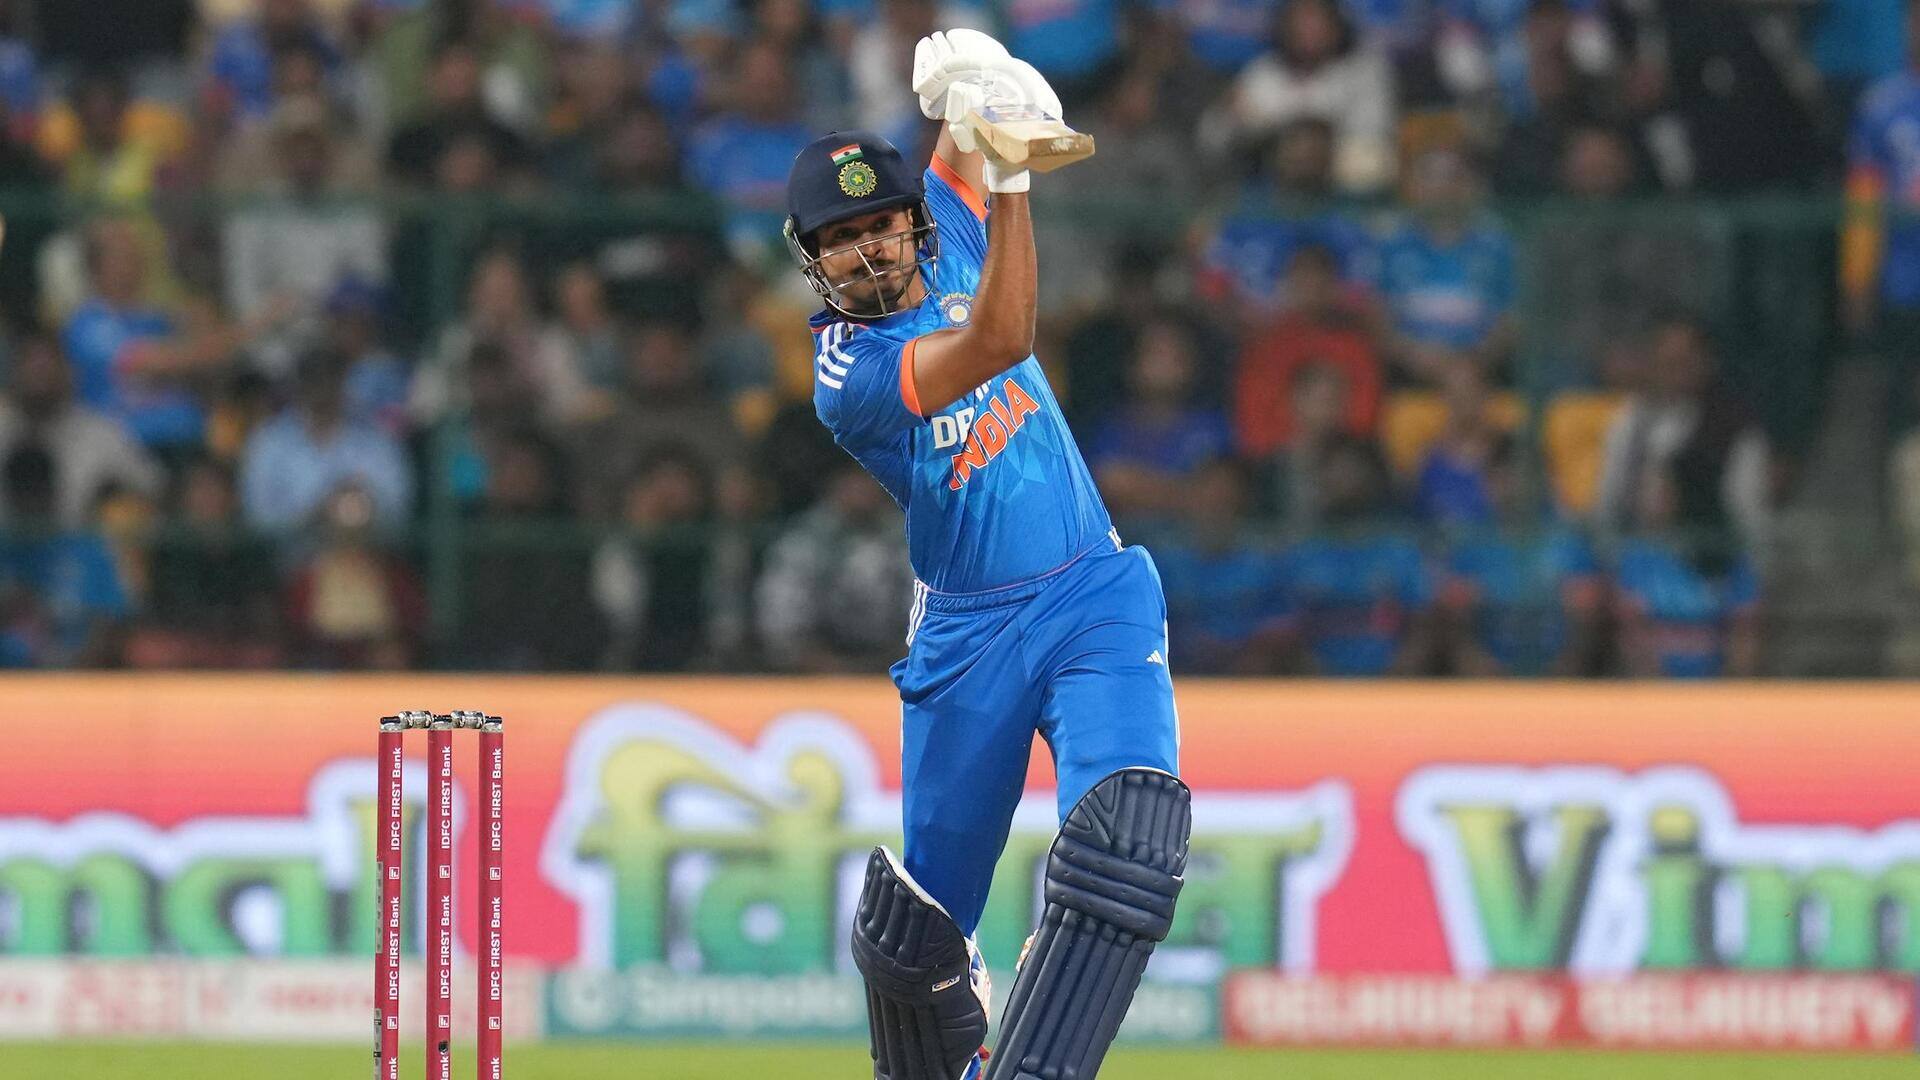 भारत बनाम ऑस्ट्रेलिया: श्रेयस अय्यर ने लगाया टी-20 अंतरराष्ट्रीय करियर का 8वां अर्धशतक, जानिए उनके आंकड़े